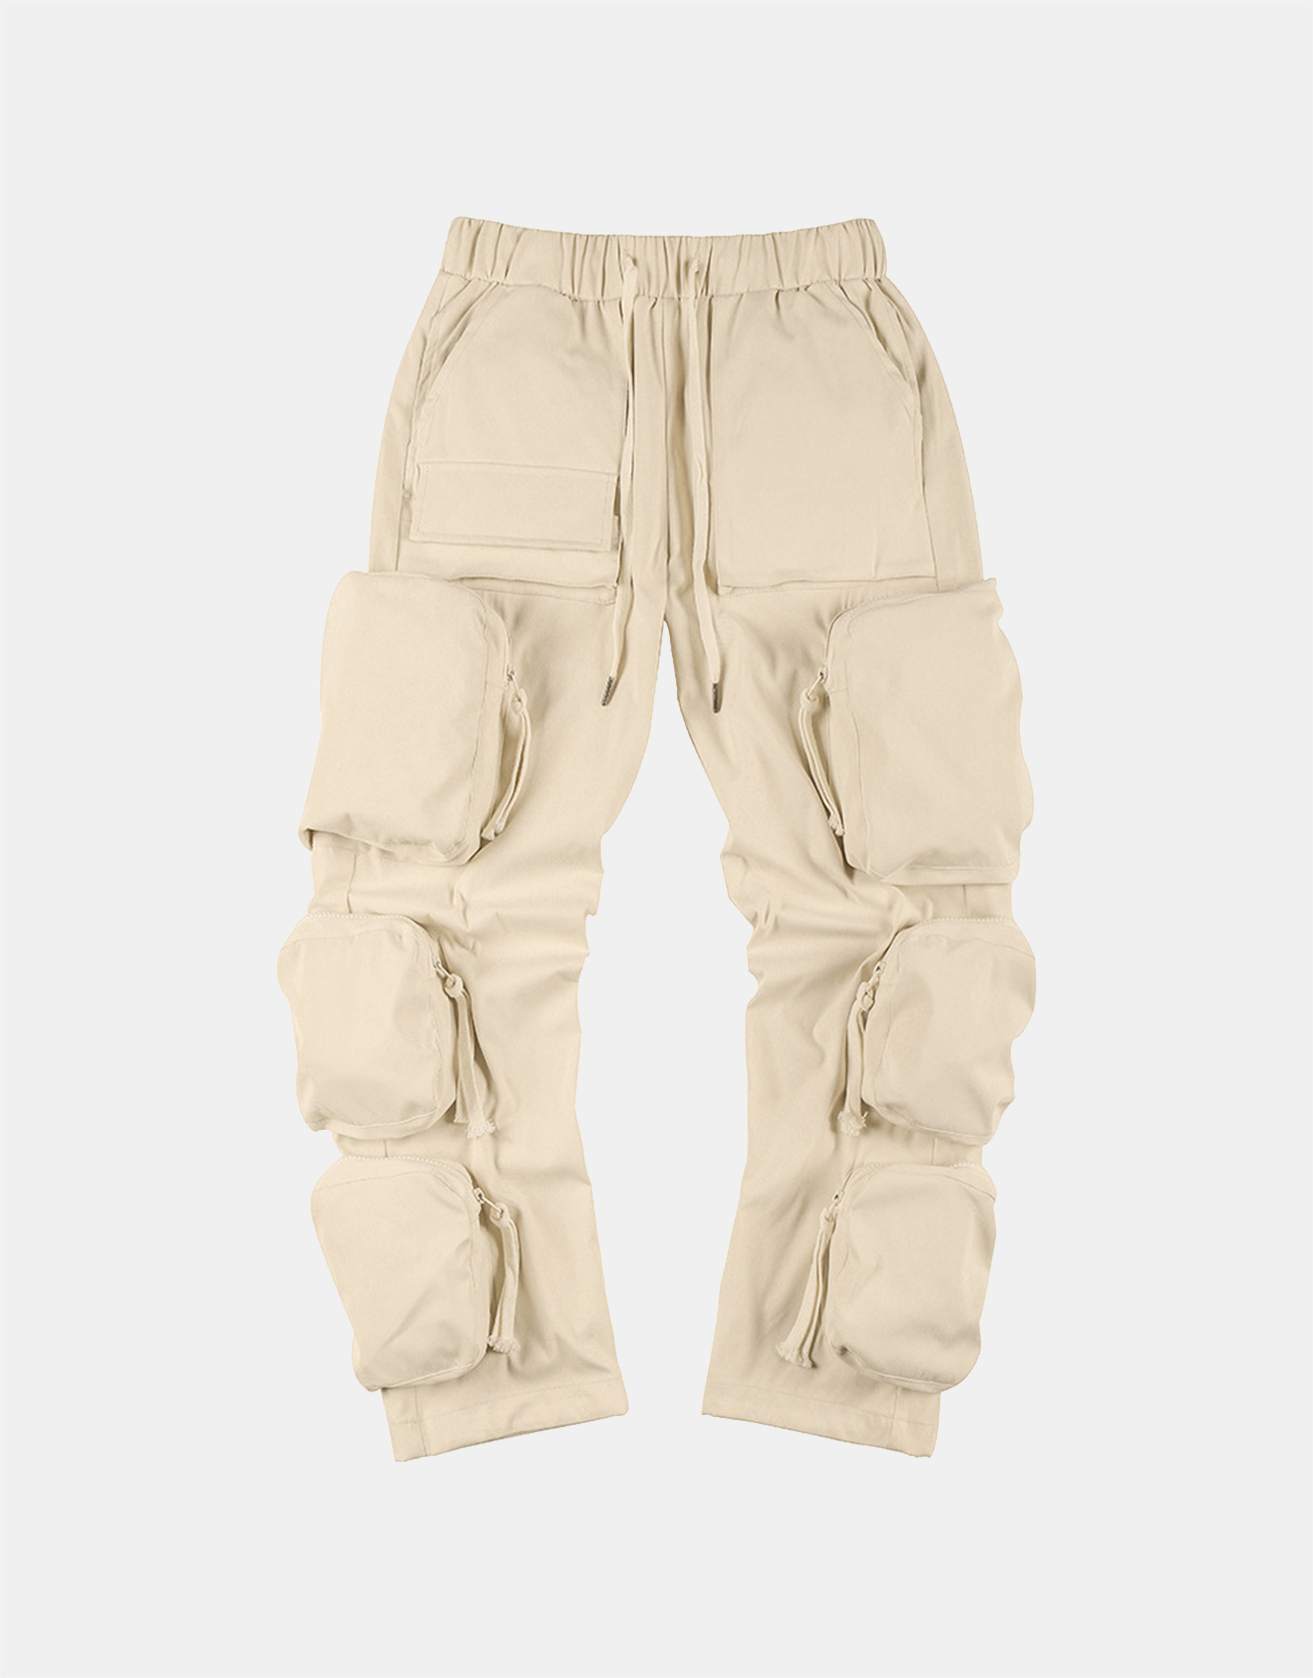 Techwear Zippered Multi-pocket Cargo Pants ... / TECHWEAR CLUB / Techwear